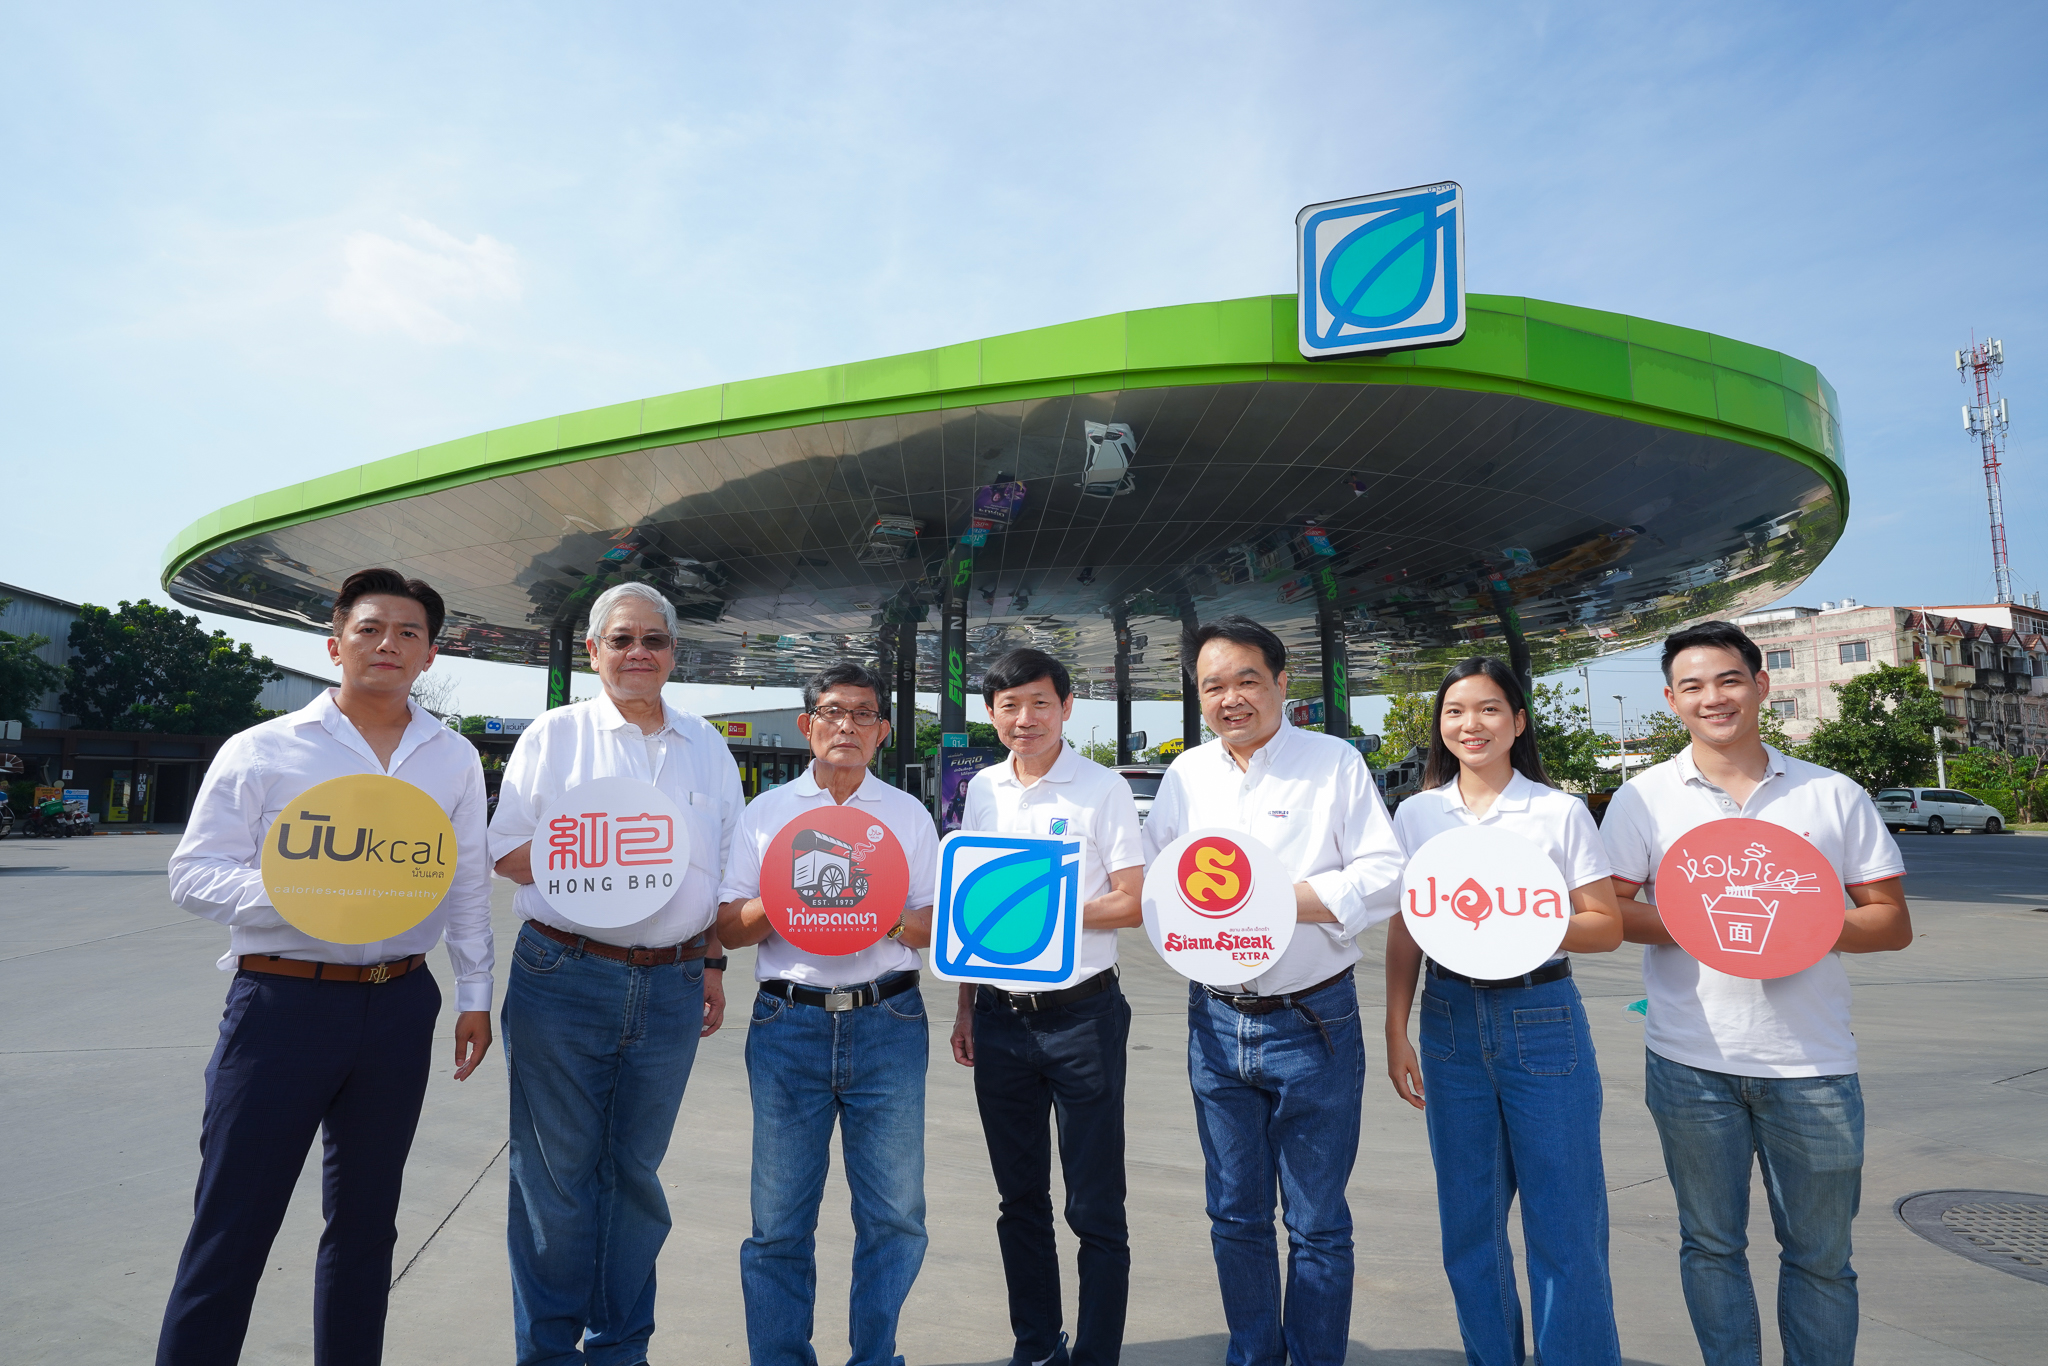 Bangchak は 6 つの有名ブランドと提携して非石油事業を強化